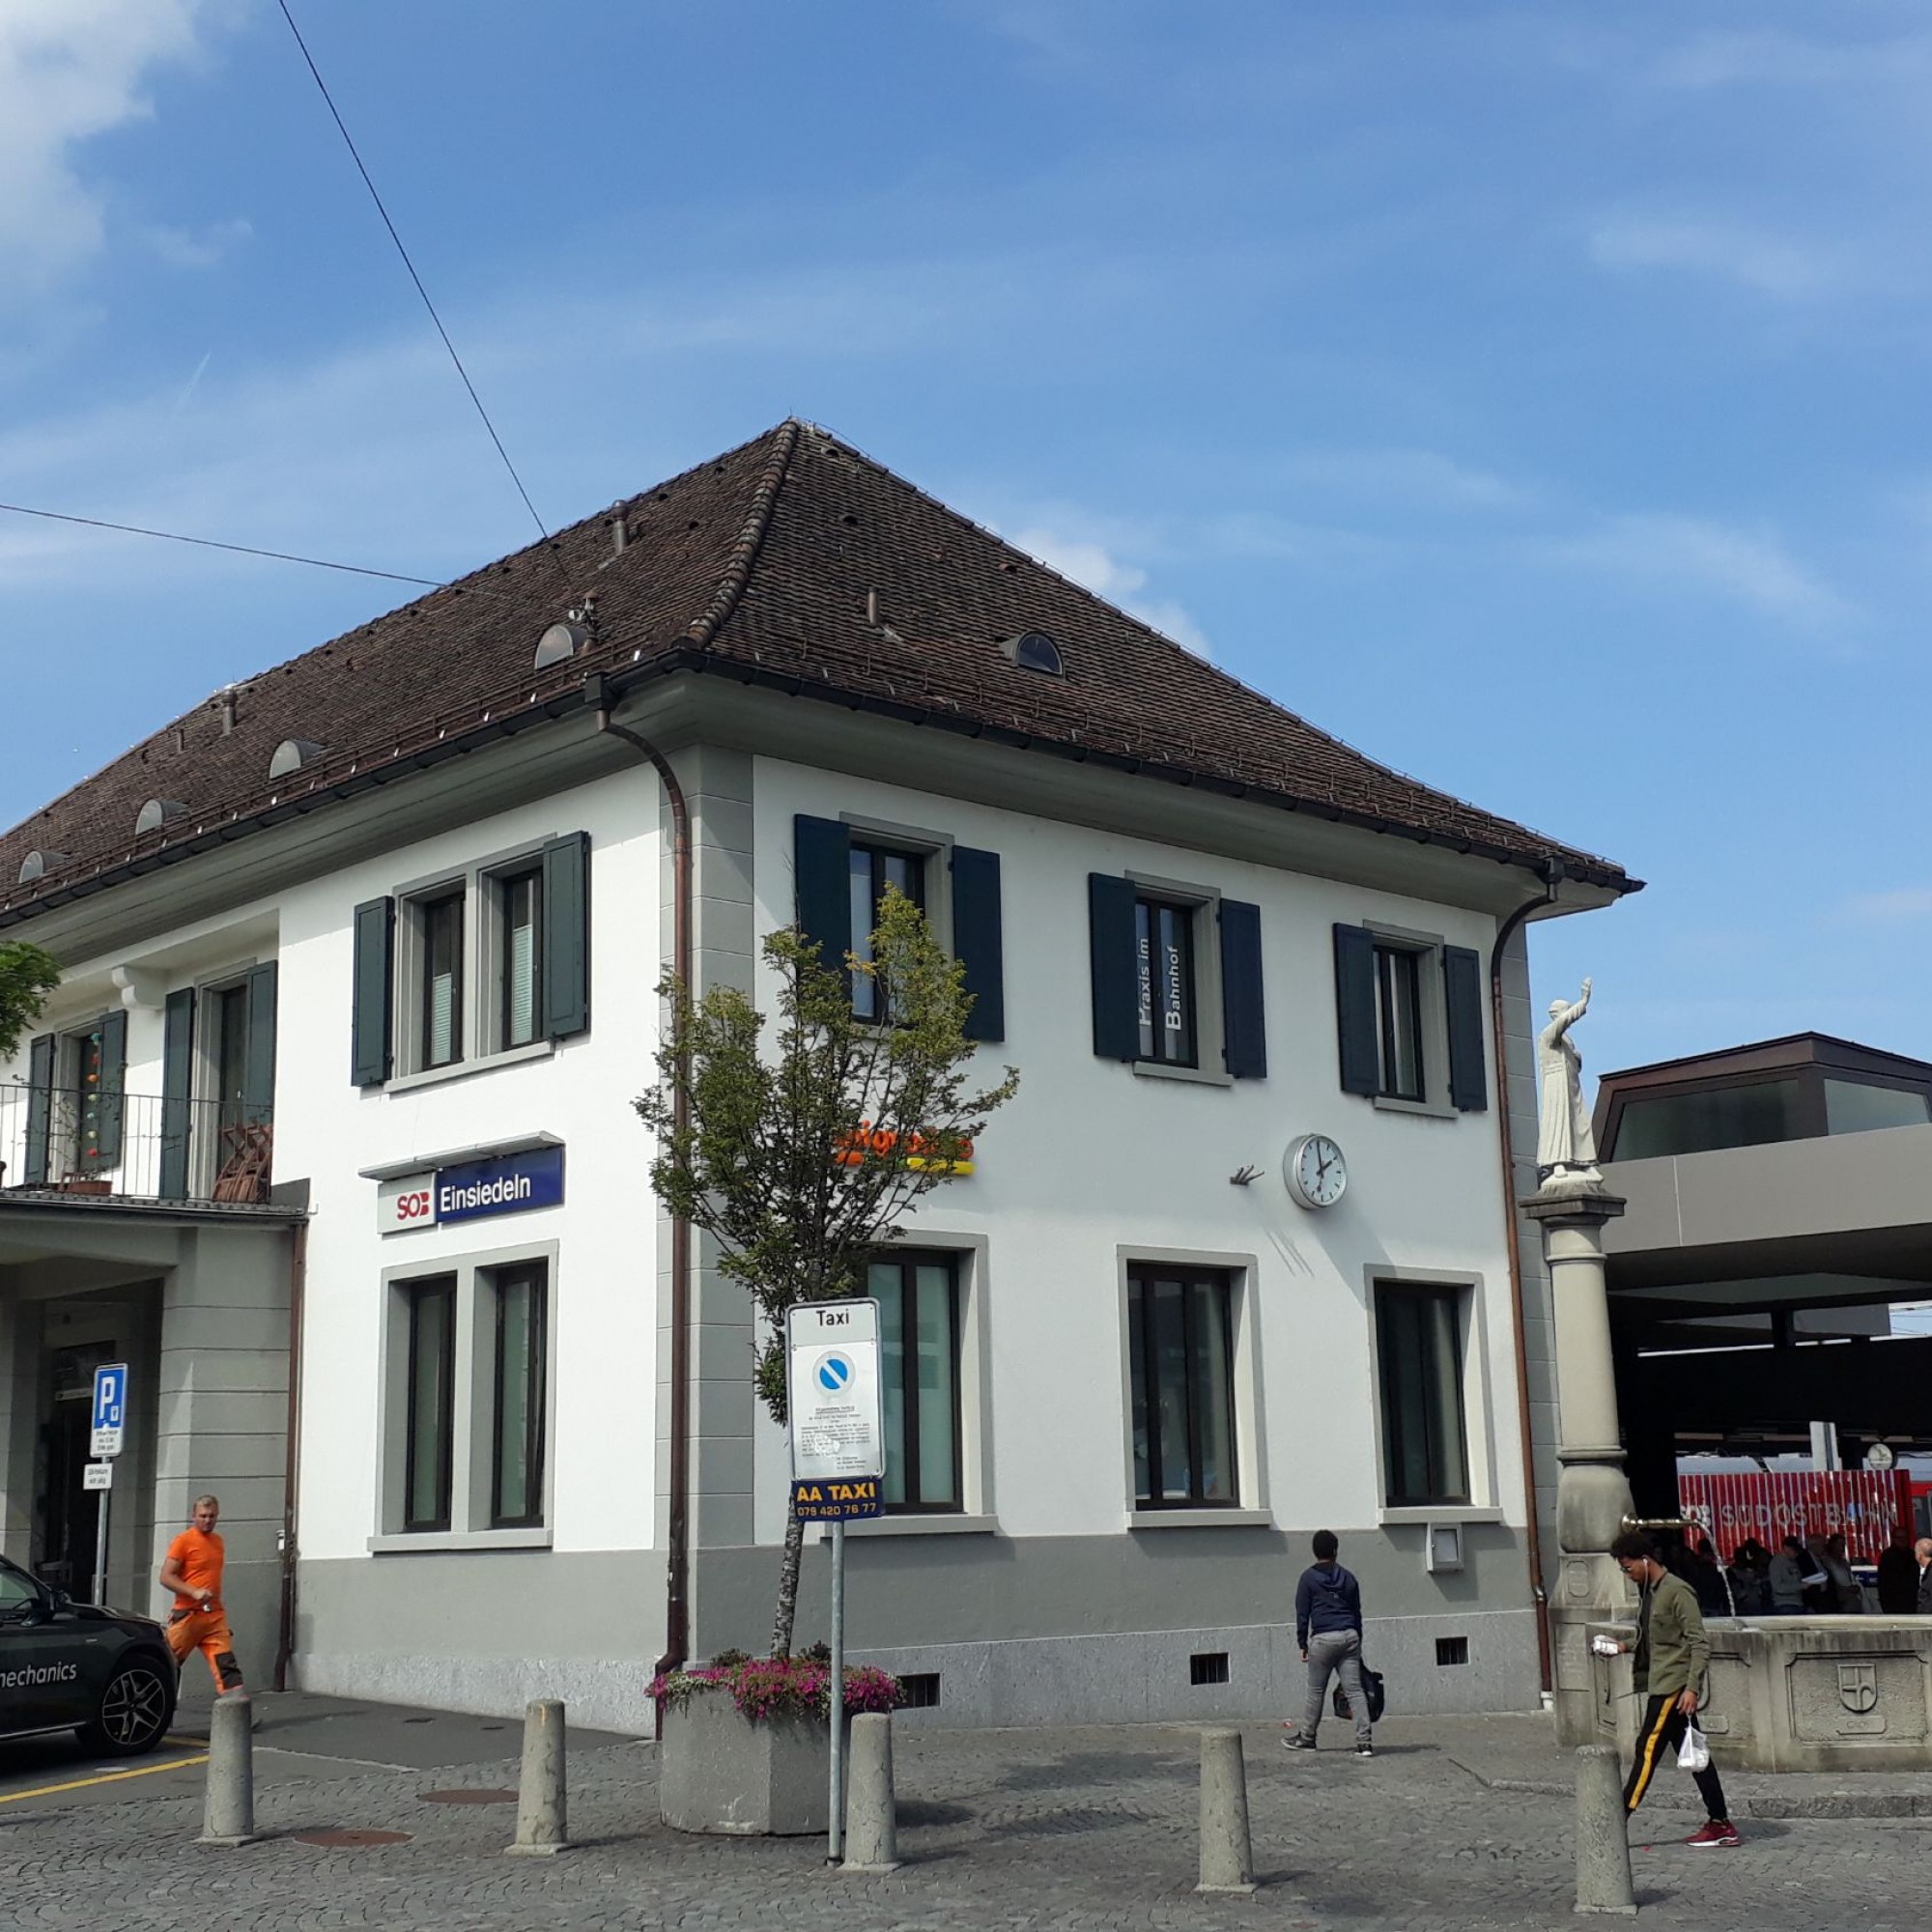 Bahnhofsgebäude in Einsiedeln.